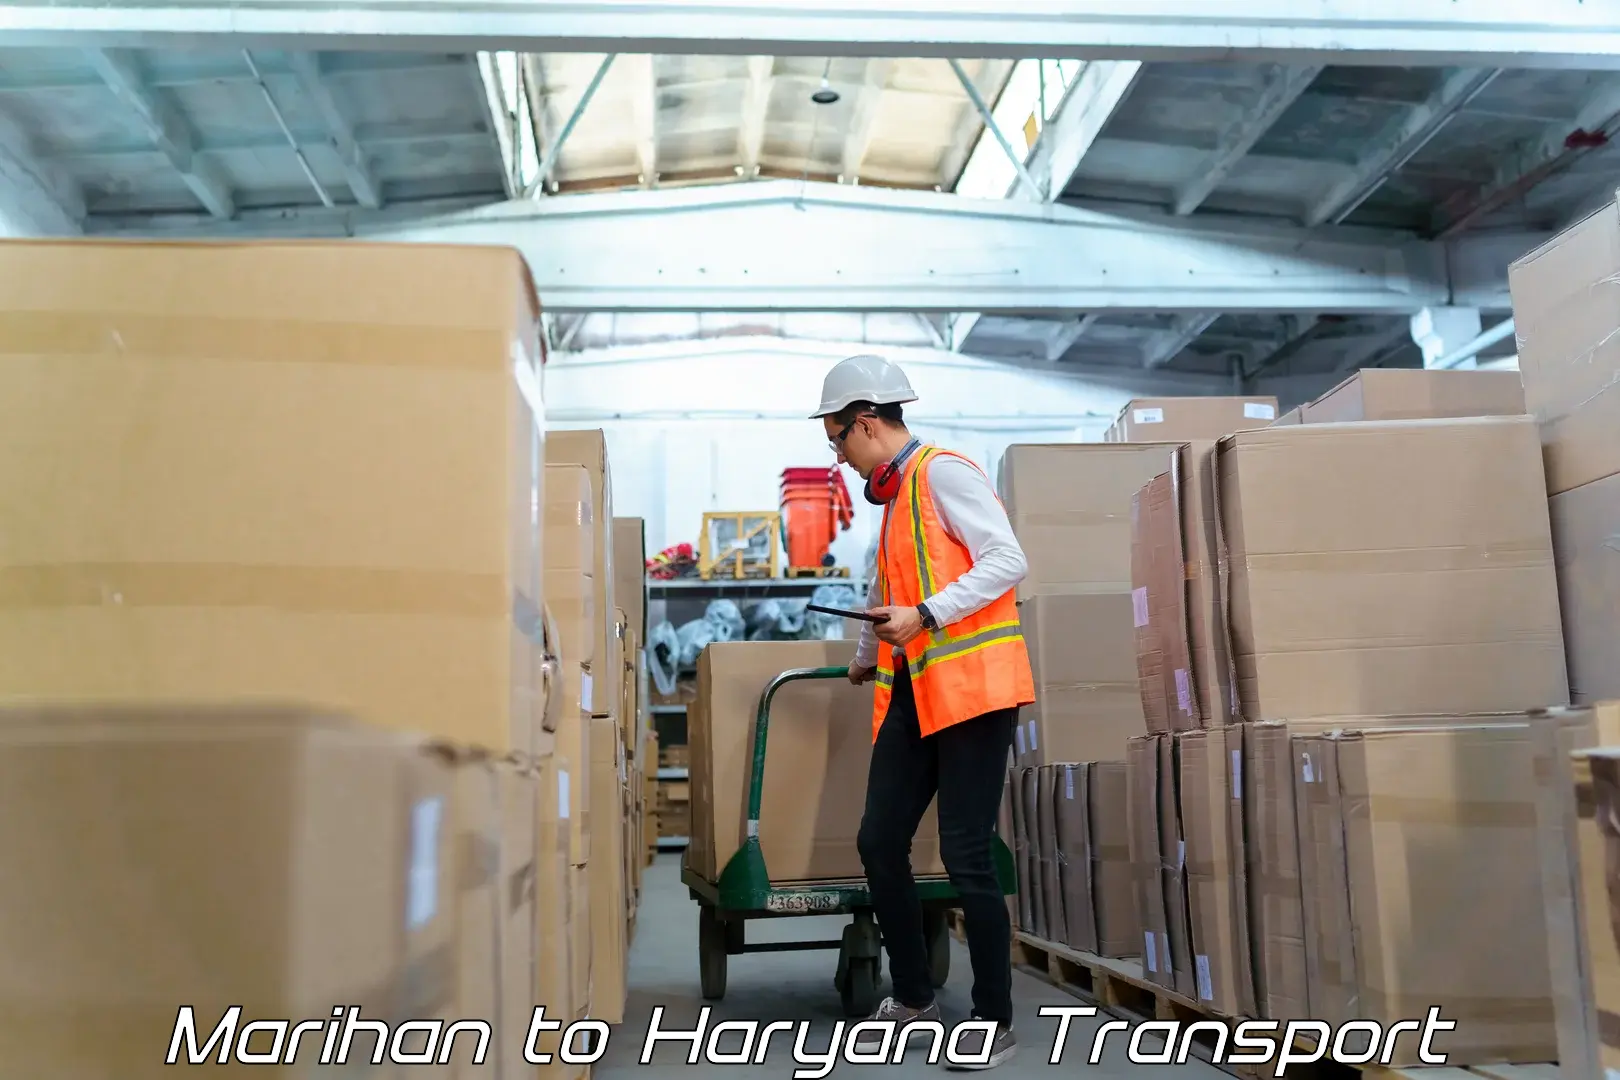 India truck logistics services Marihan to Fatehabad